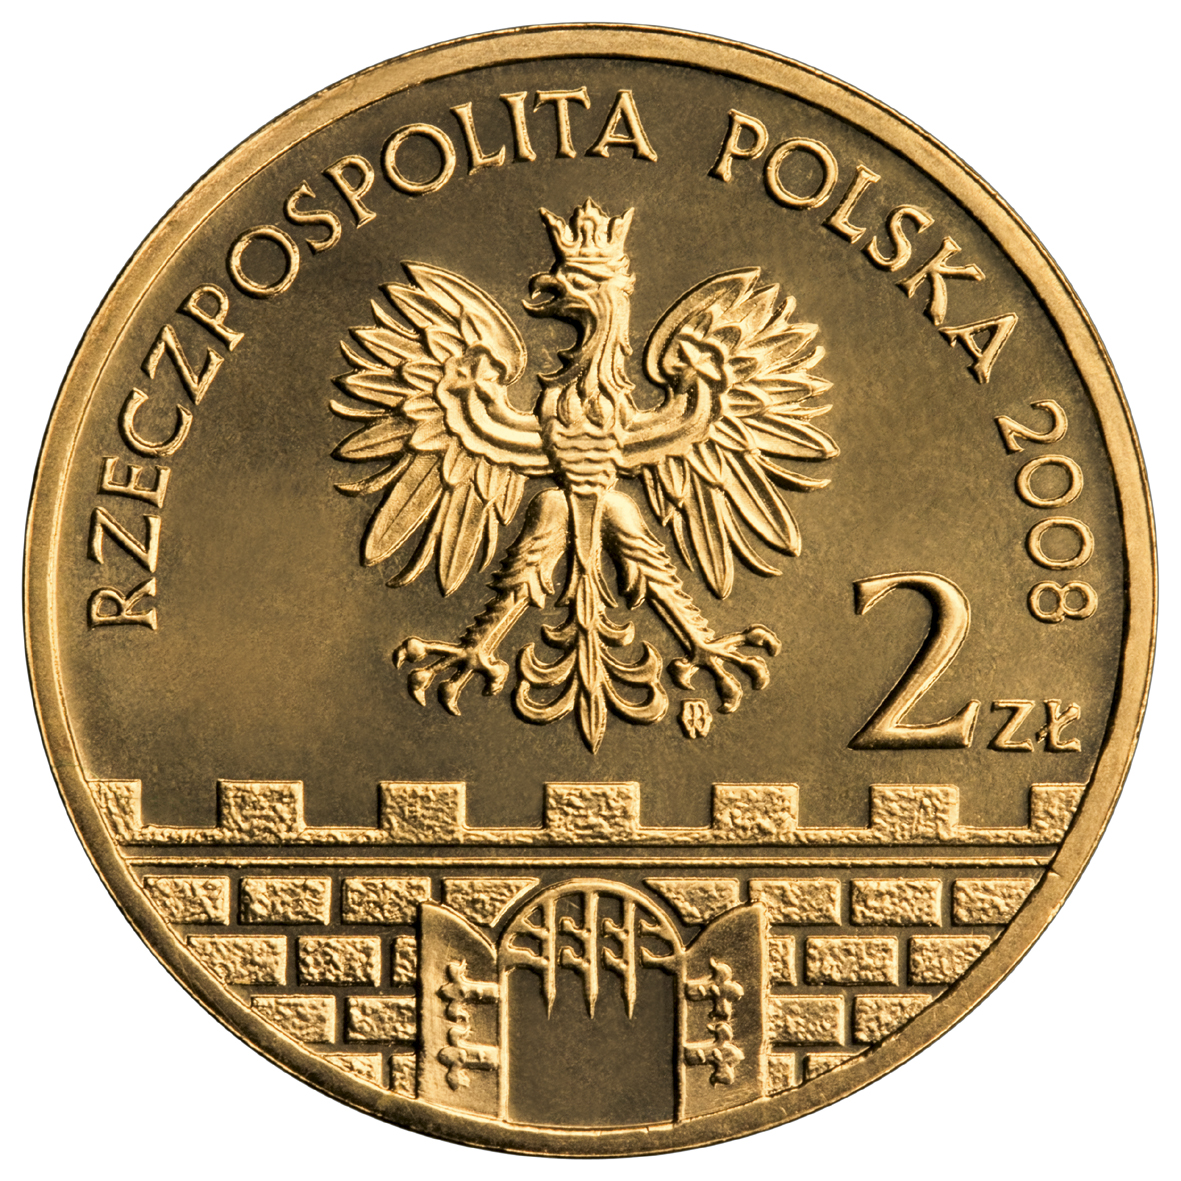 2zl-piotrkow-trybunalski-awers-monety